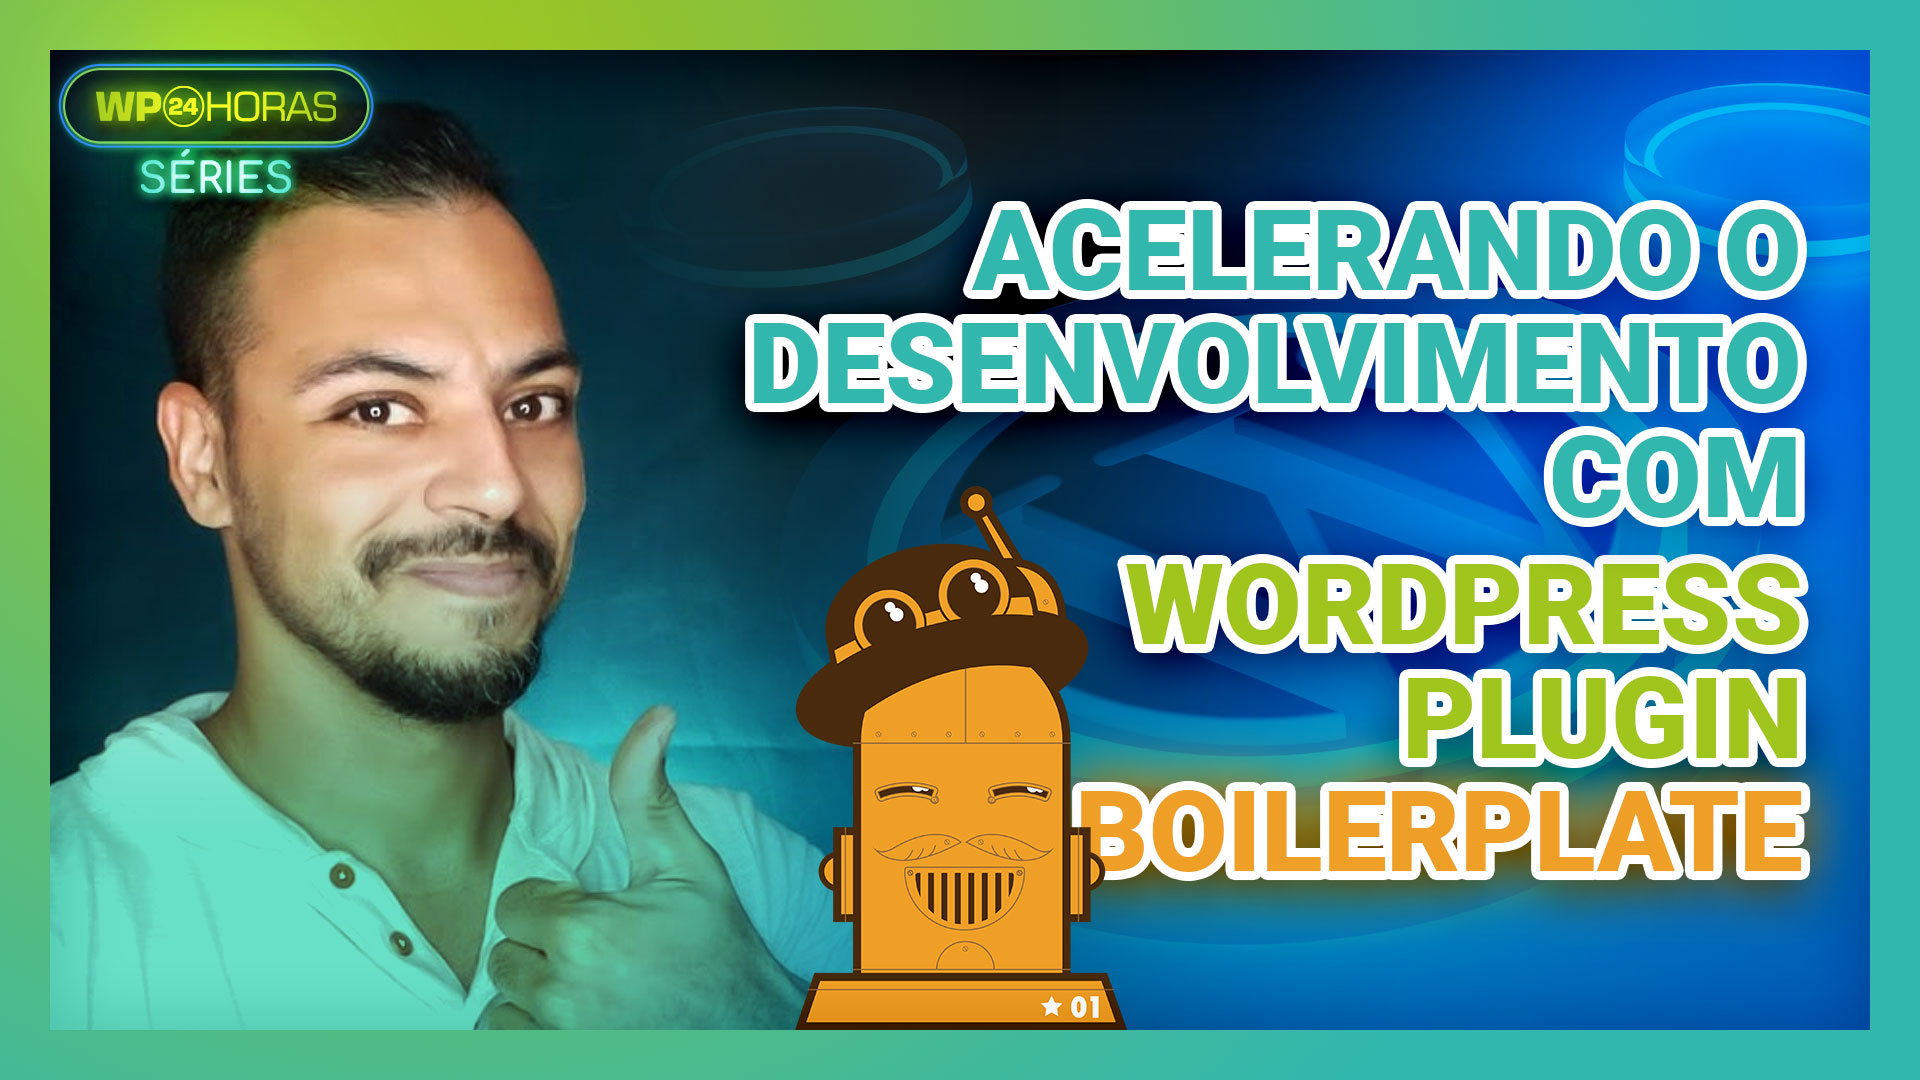 Acelere o Desenvolvimento usando o WordPress Plugin Boilerplate